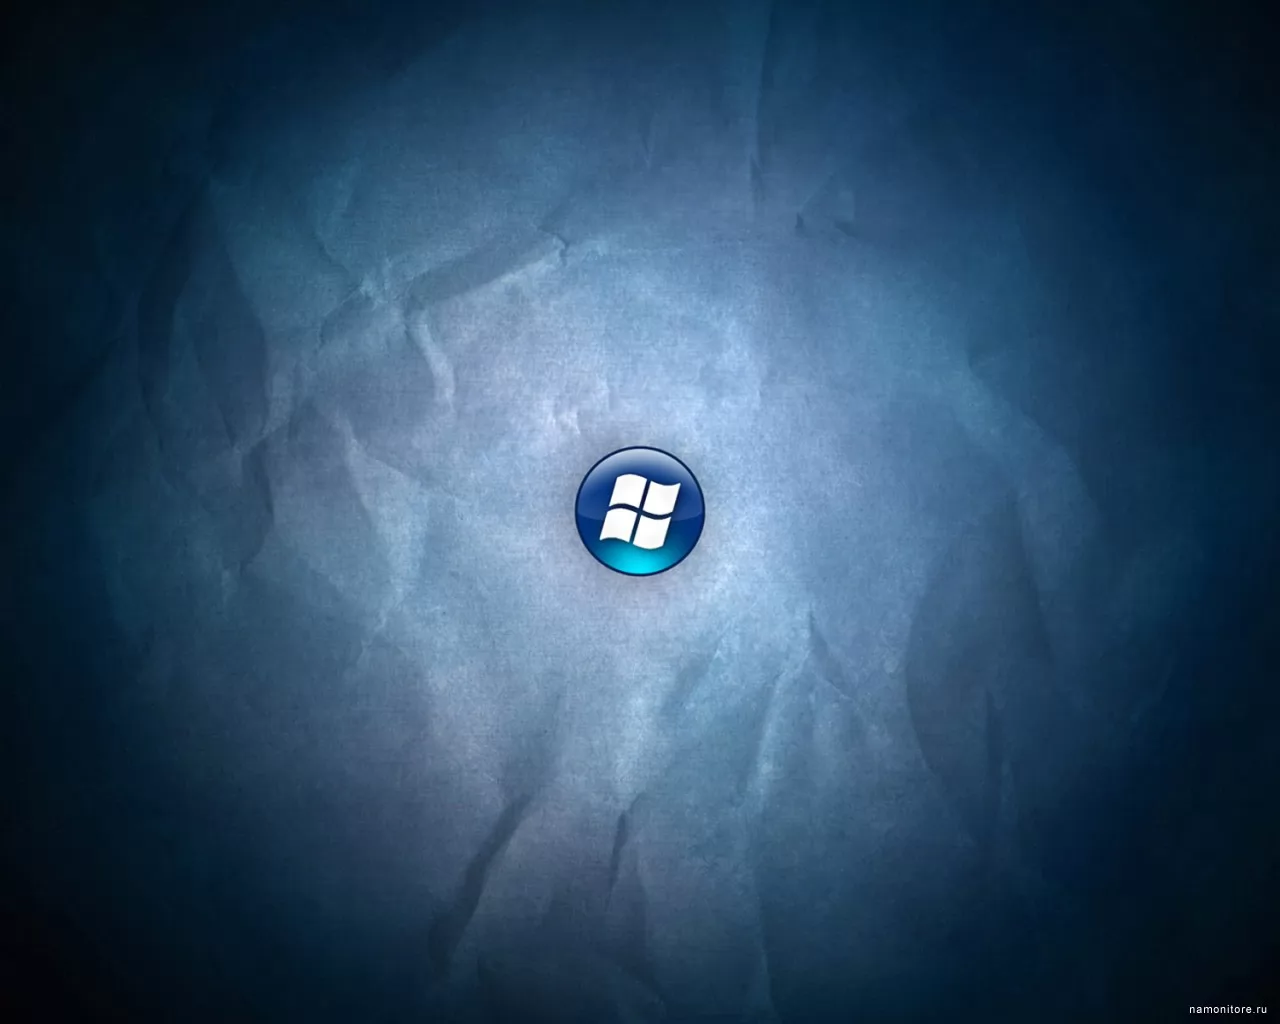 Логотип, компьютеры и программы, рисованное, синее х